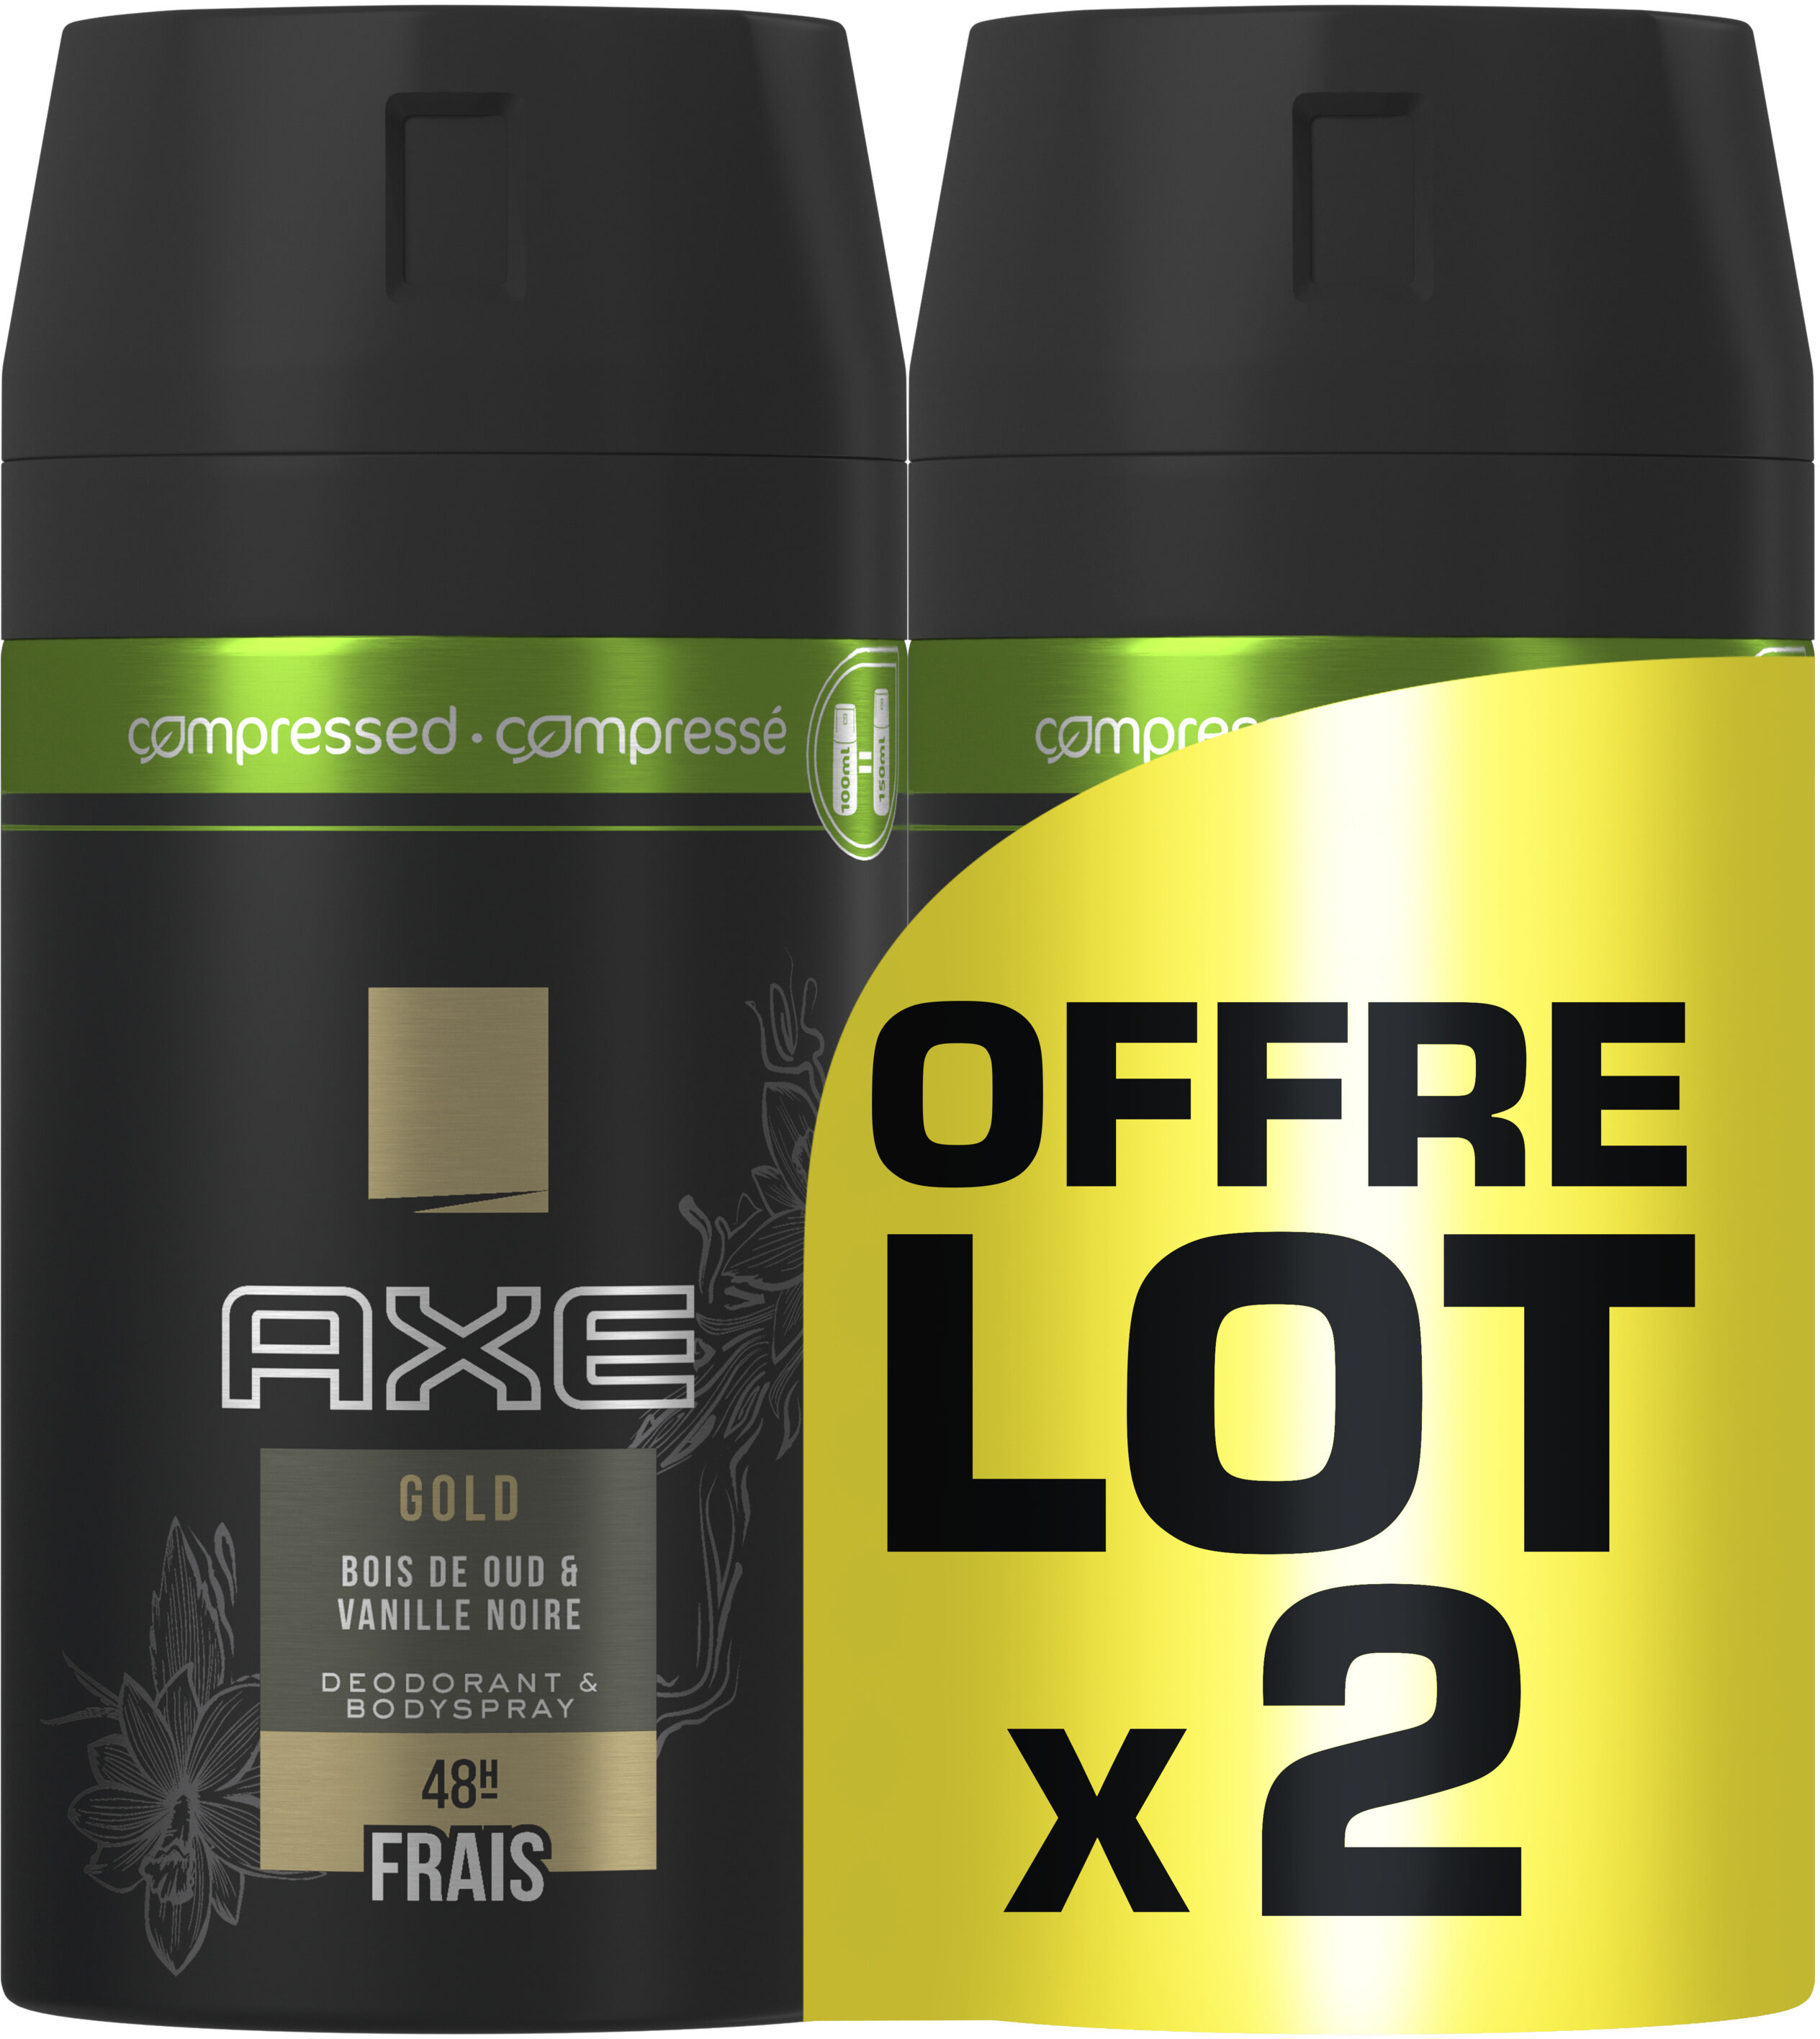 AXE Gold Compressé Déodorant Homme Spray Bois de Oud et Vanille Noir Frais 48H Lot 2x100ml - Product - fr